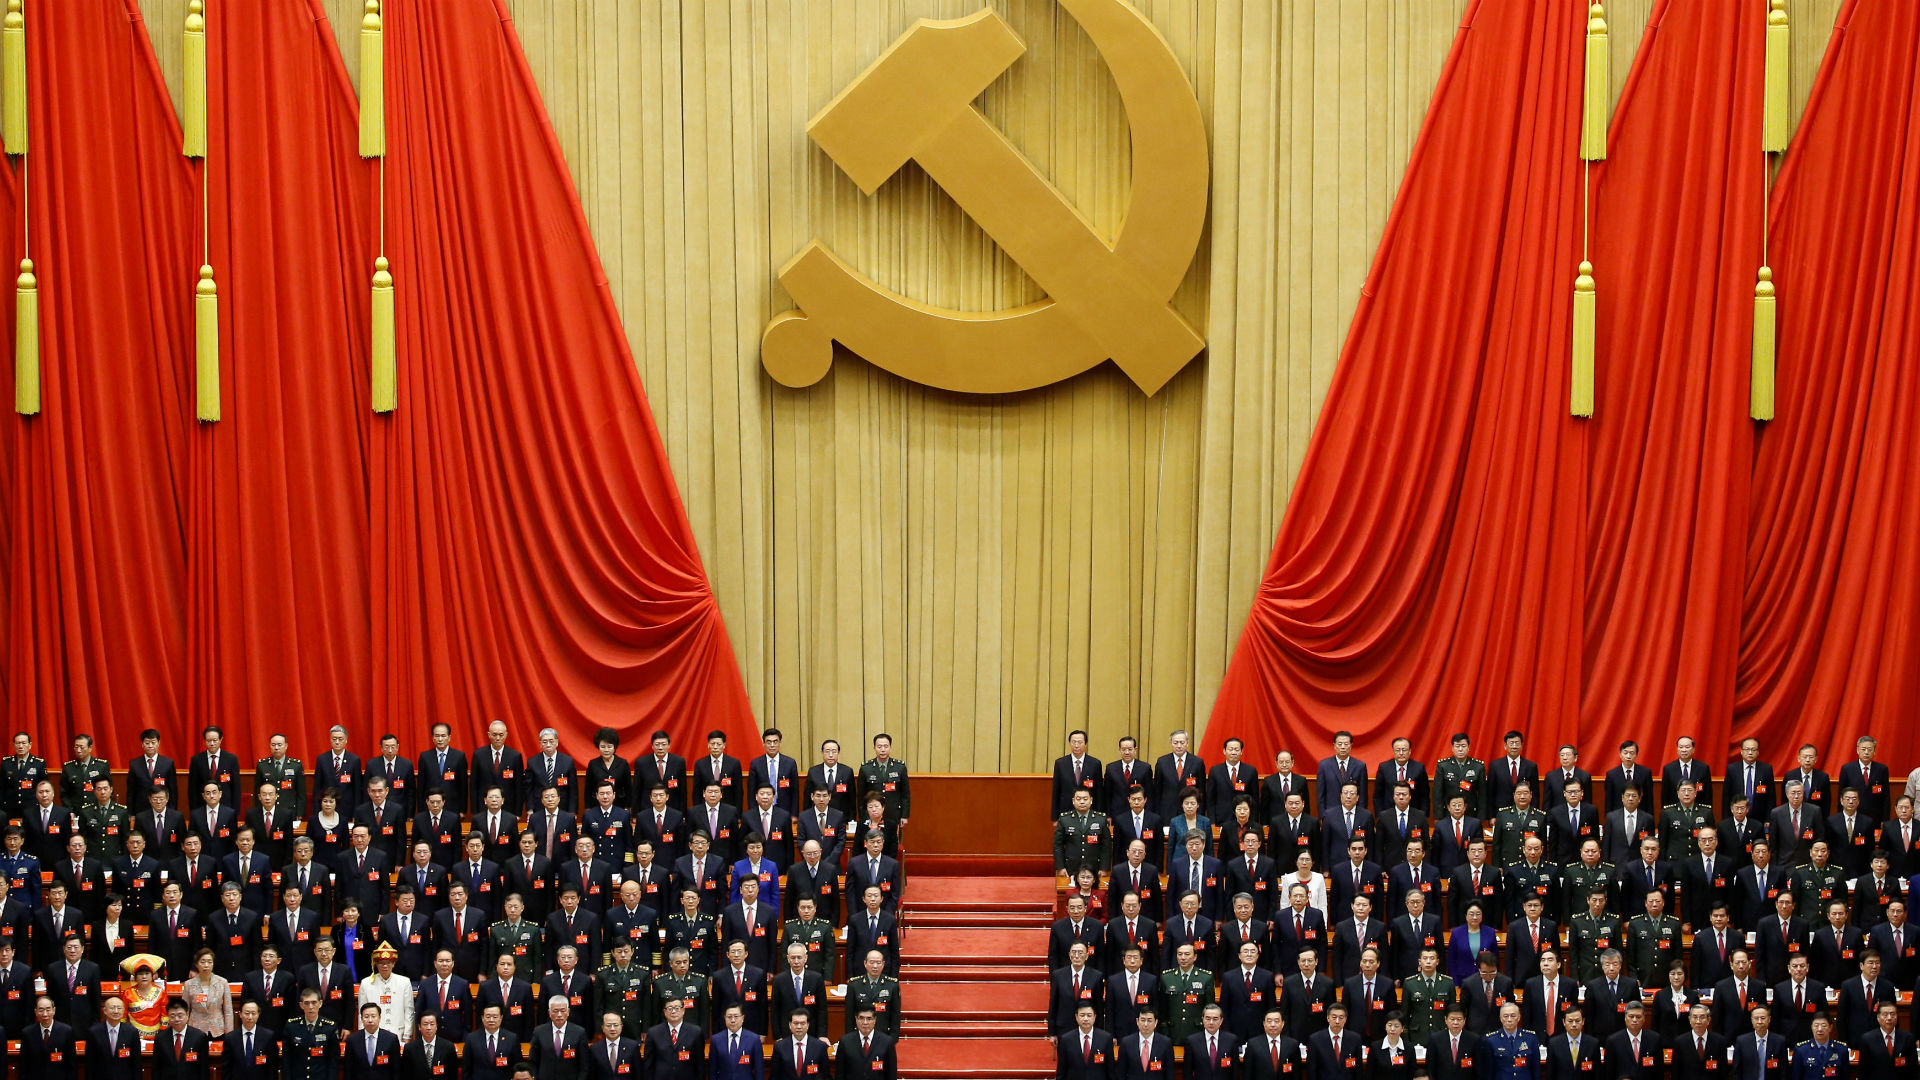 Partido comunista chino 